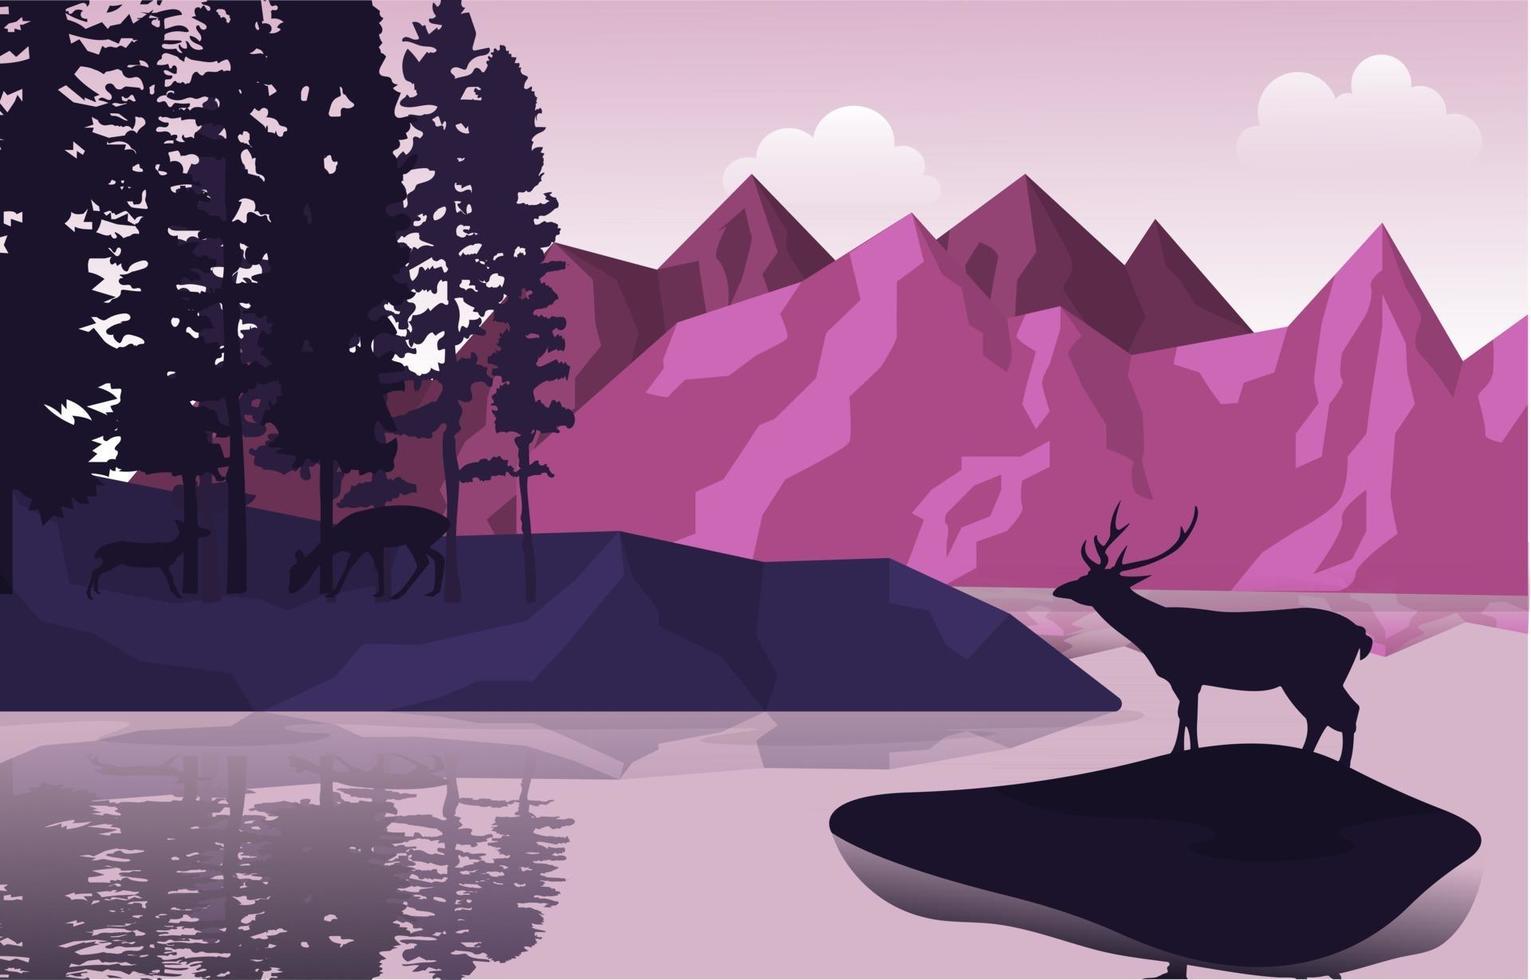 pacífica montanha lago veados pinheiros natureza paisagem ilustração vetor